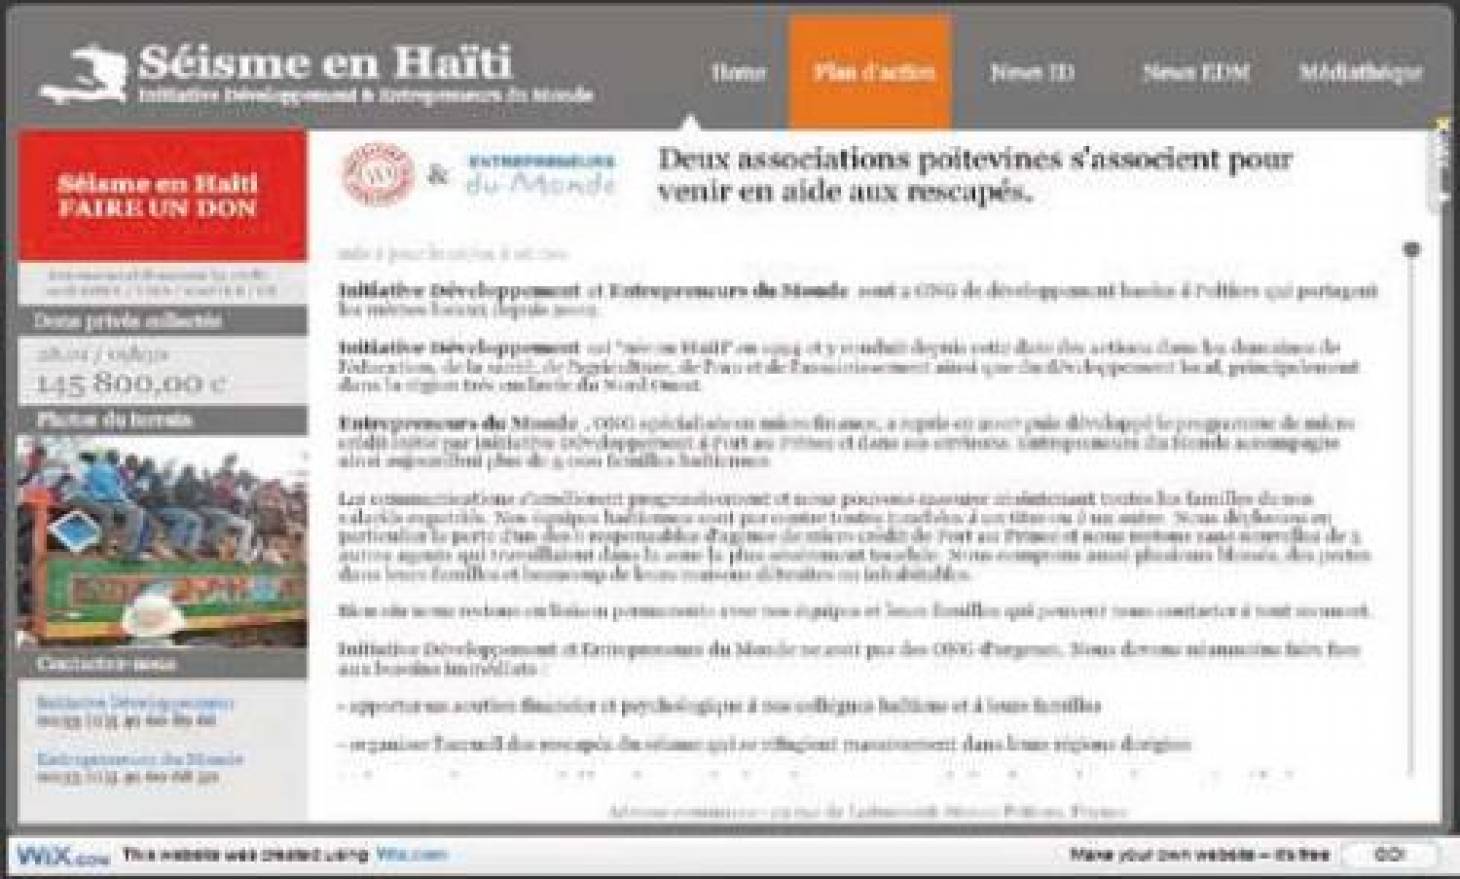 Les réseaux sociaux au secours d’Haïti